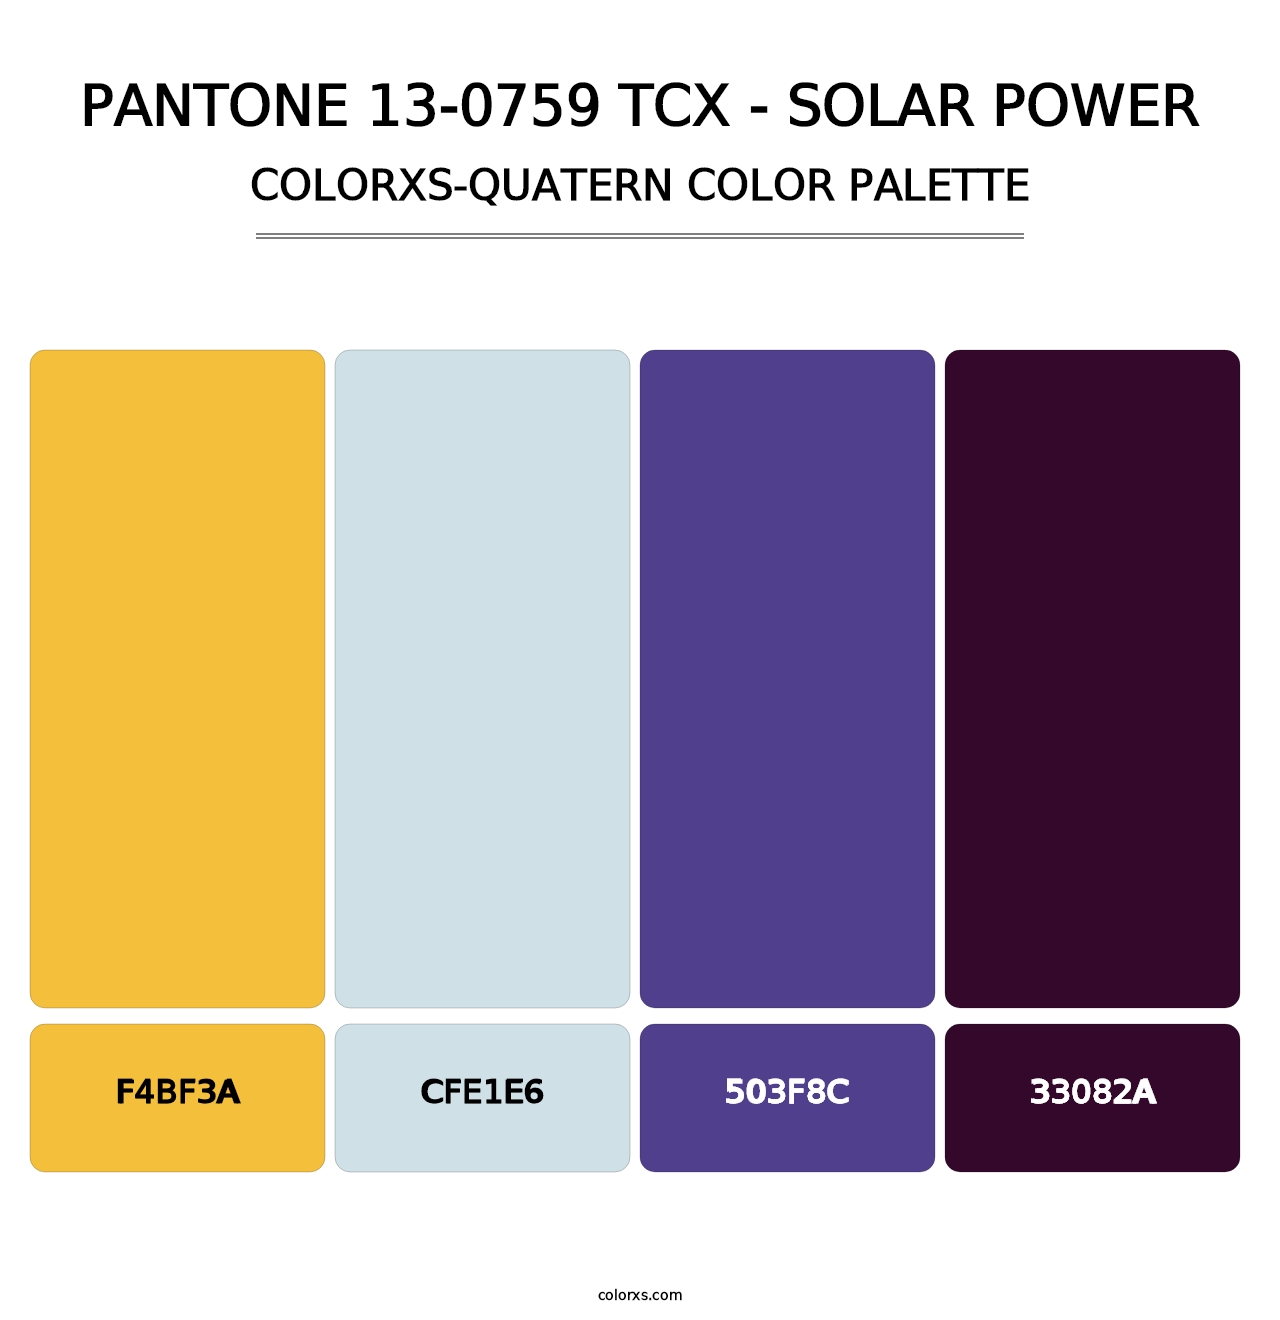 PANTONE 13-0759 TCX - Solar Power - Colorxs Quatern Palette